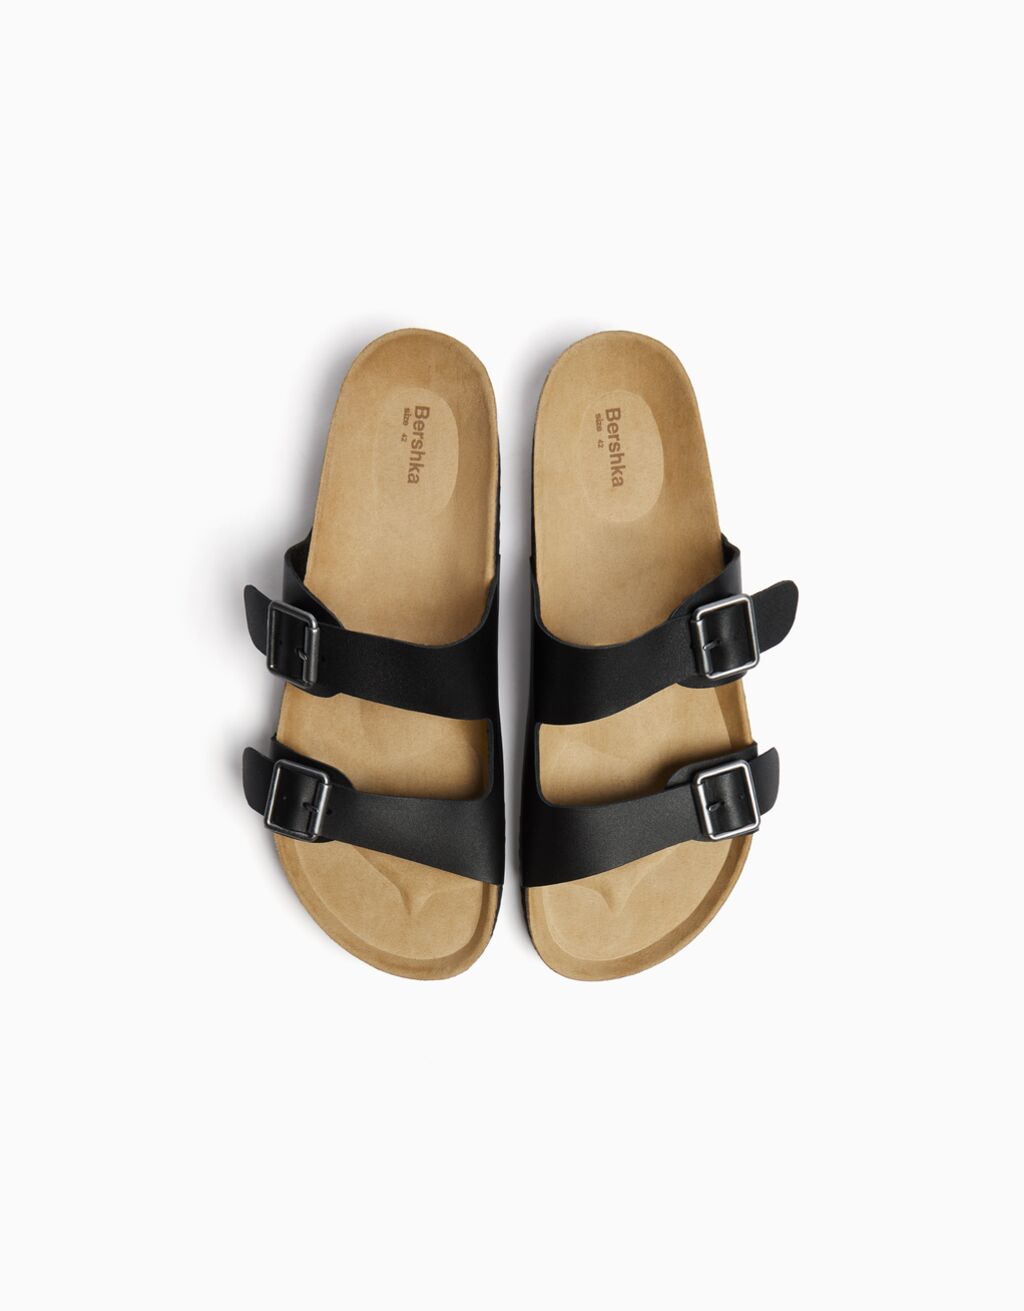 Men’s LEATHER sandals with buckles - Men | Bershka